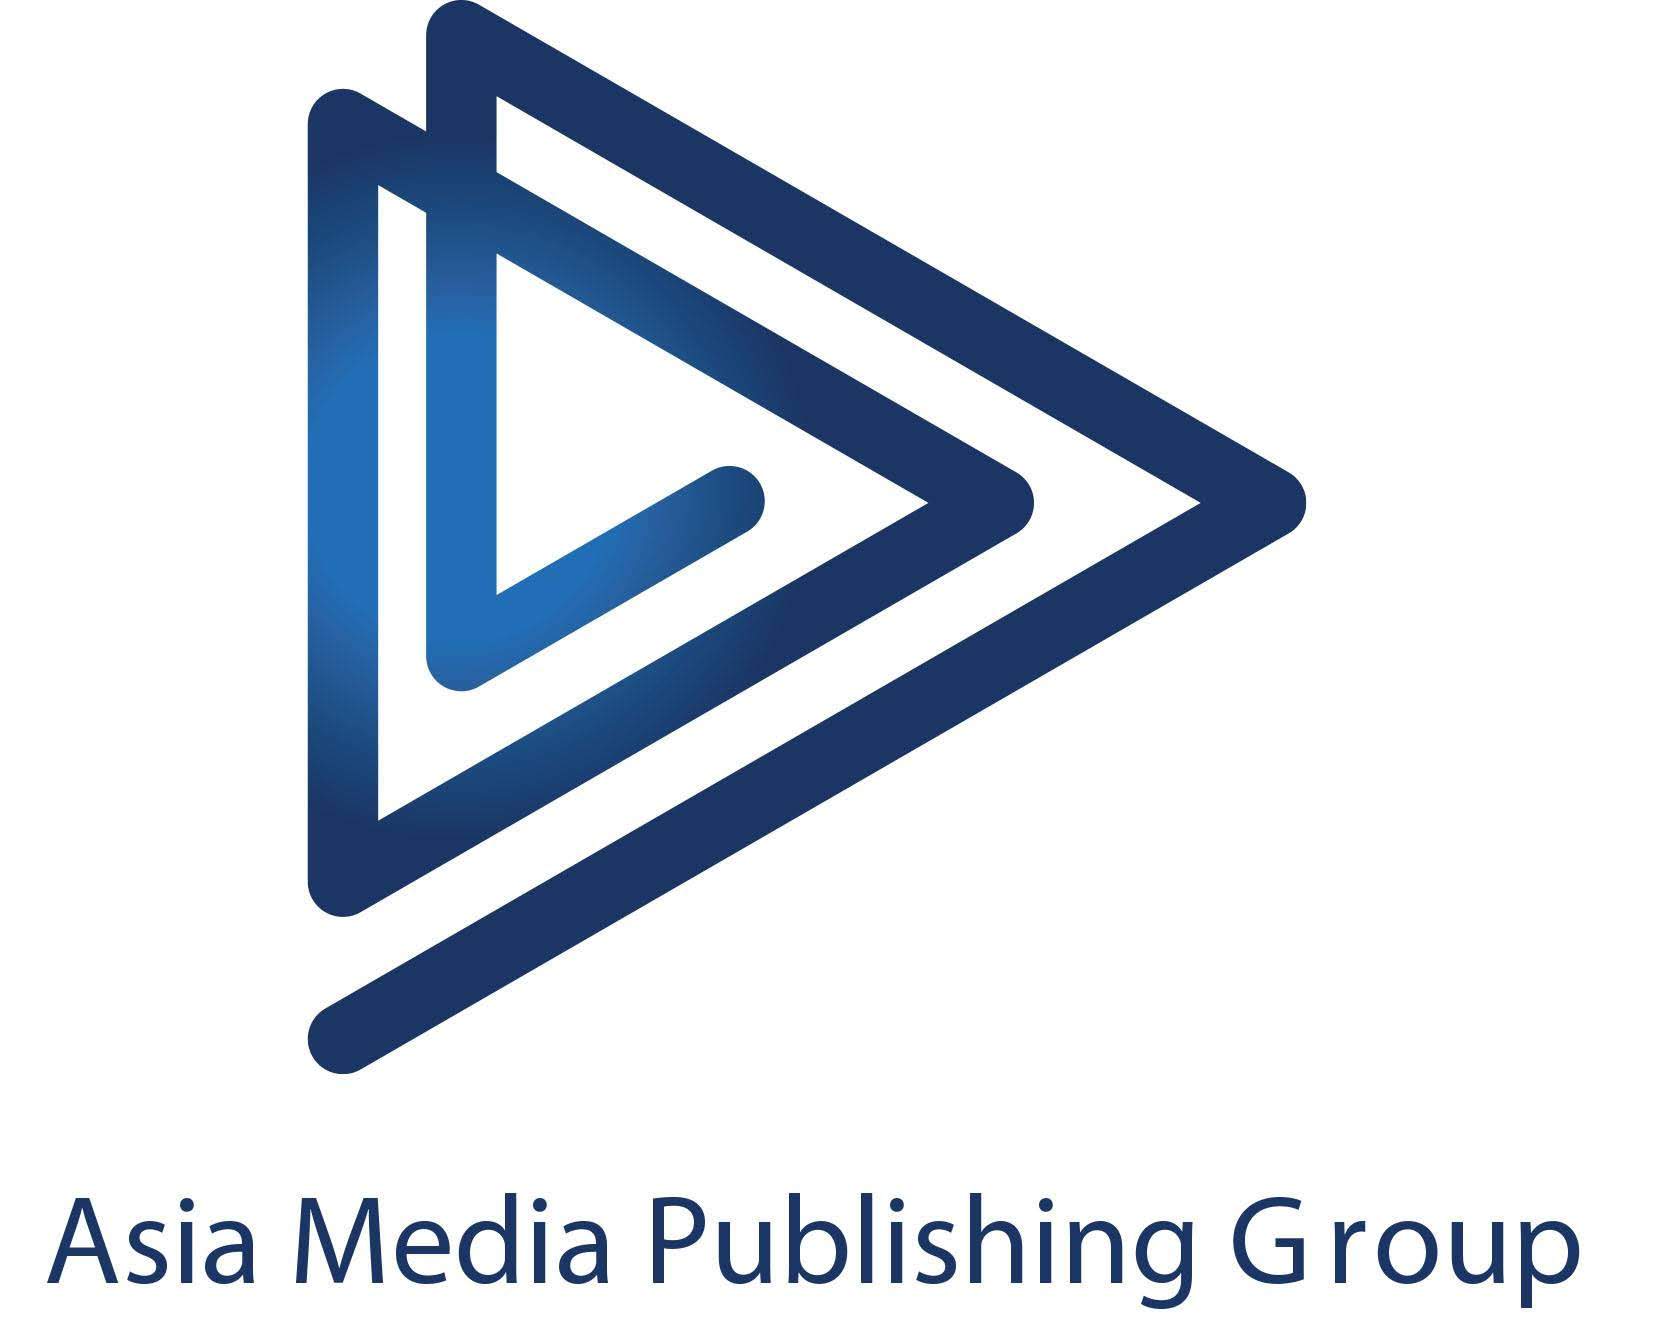 Asia Media Publishing Group